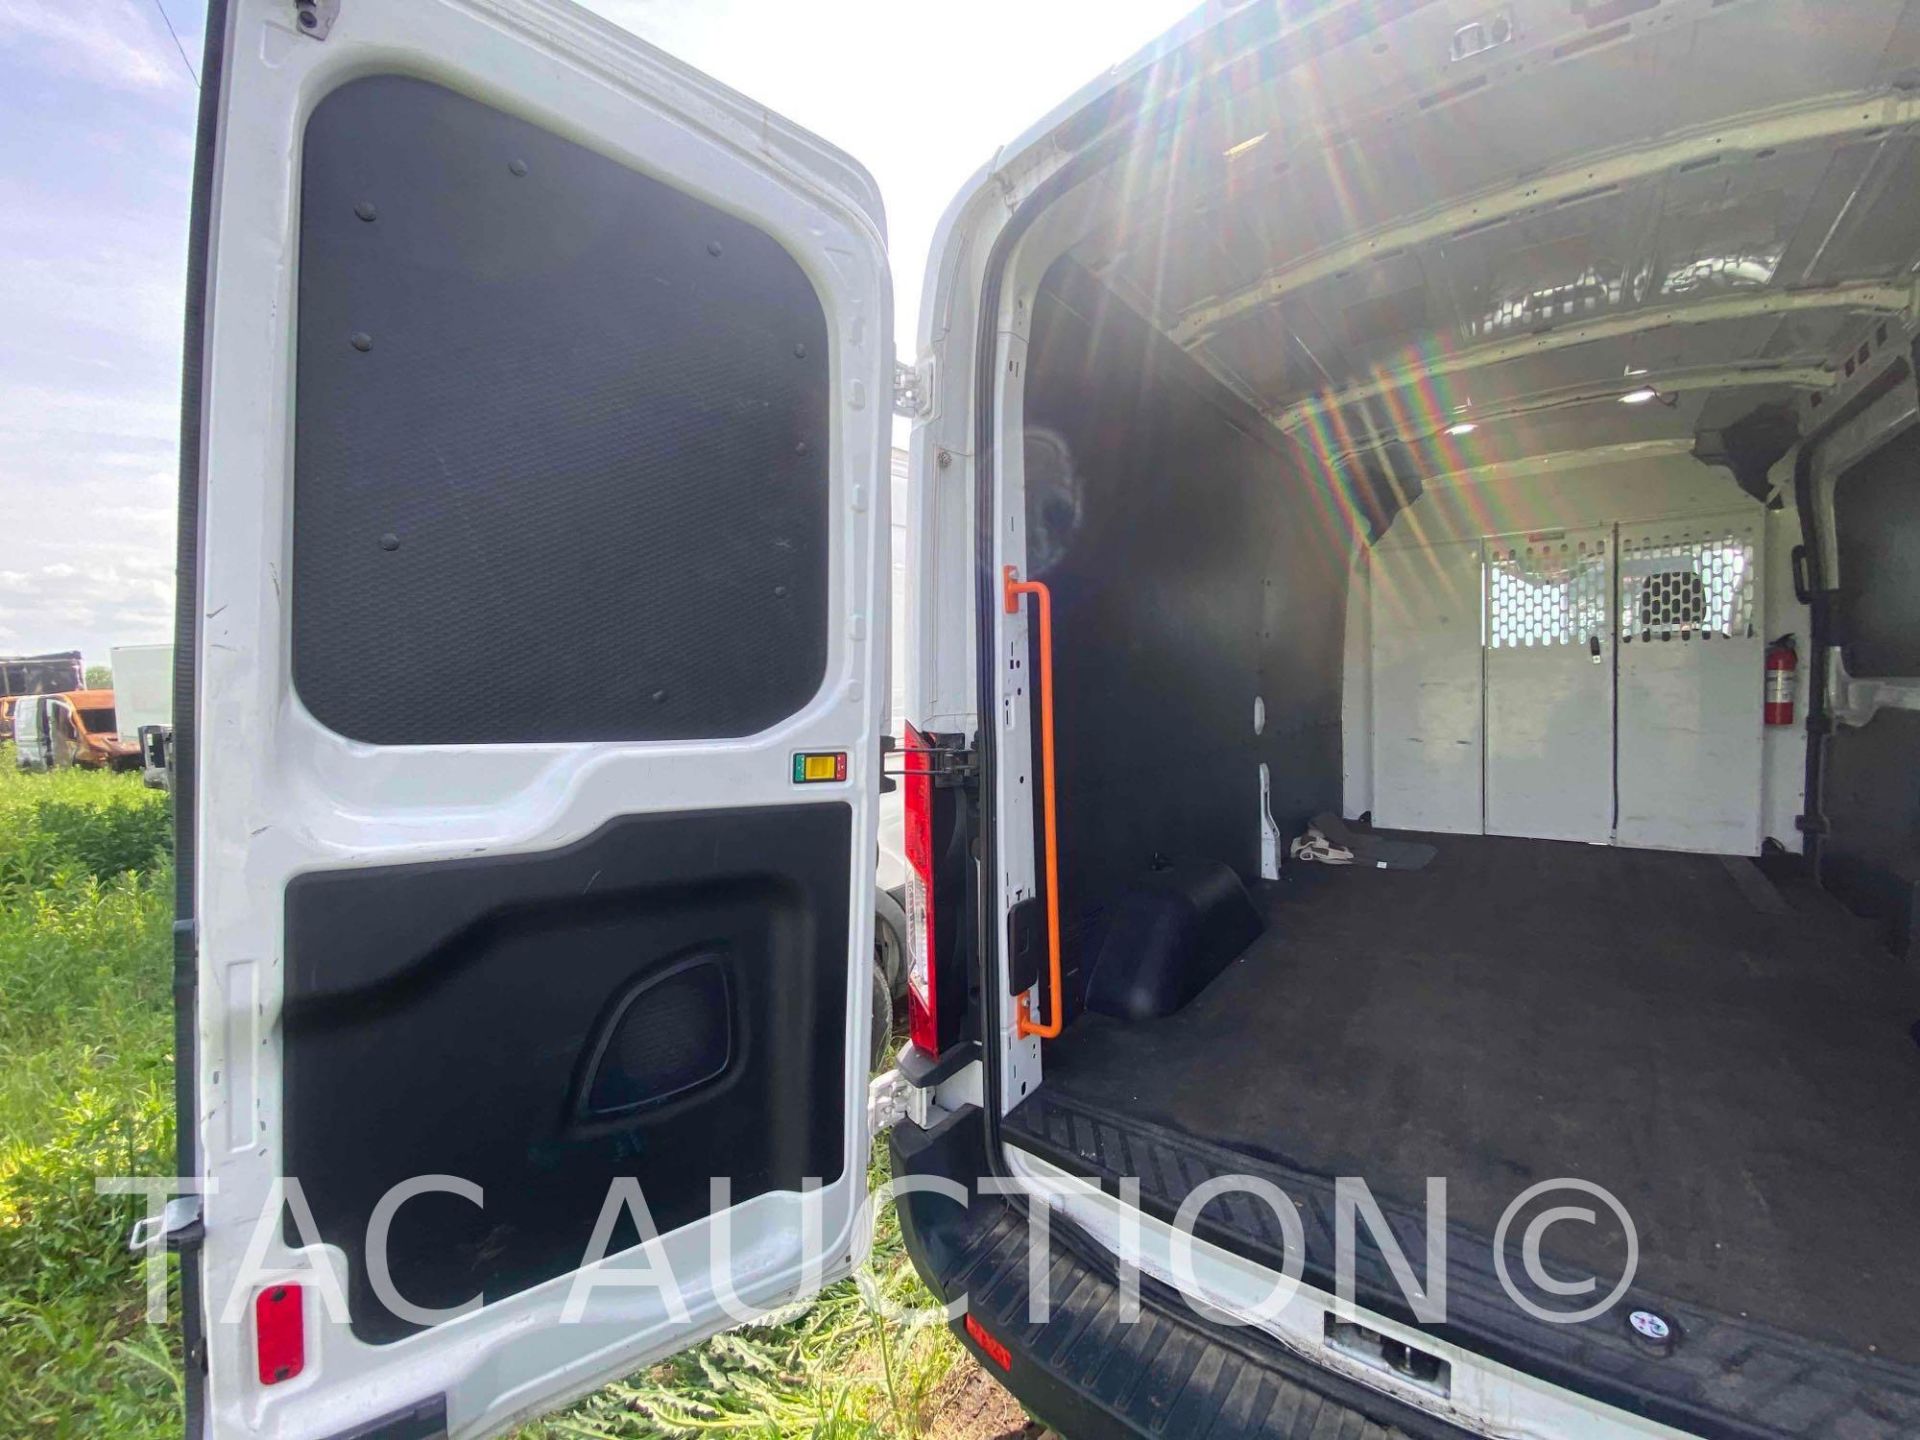 2019 Ford Transit 150 Cargo Van - Image 20 of 45